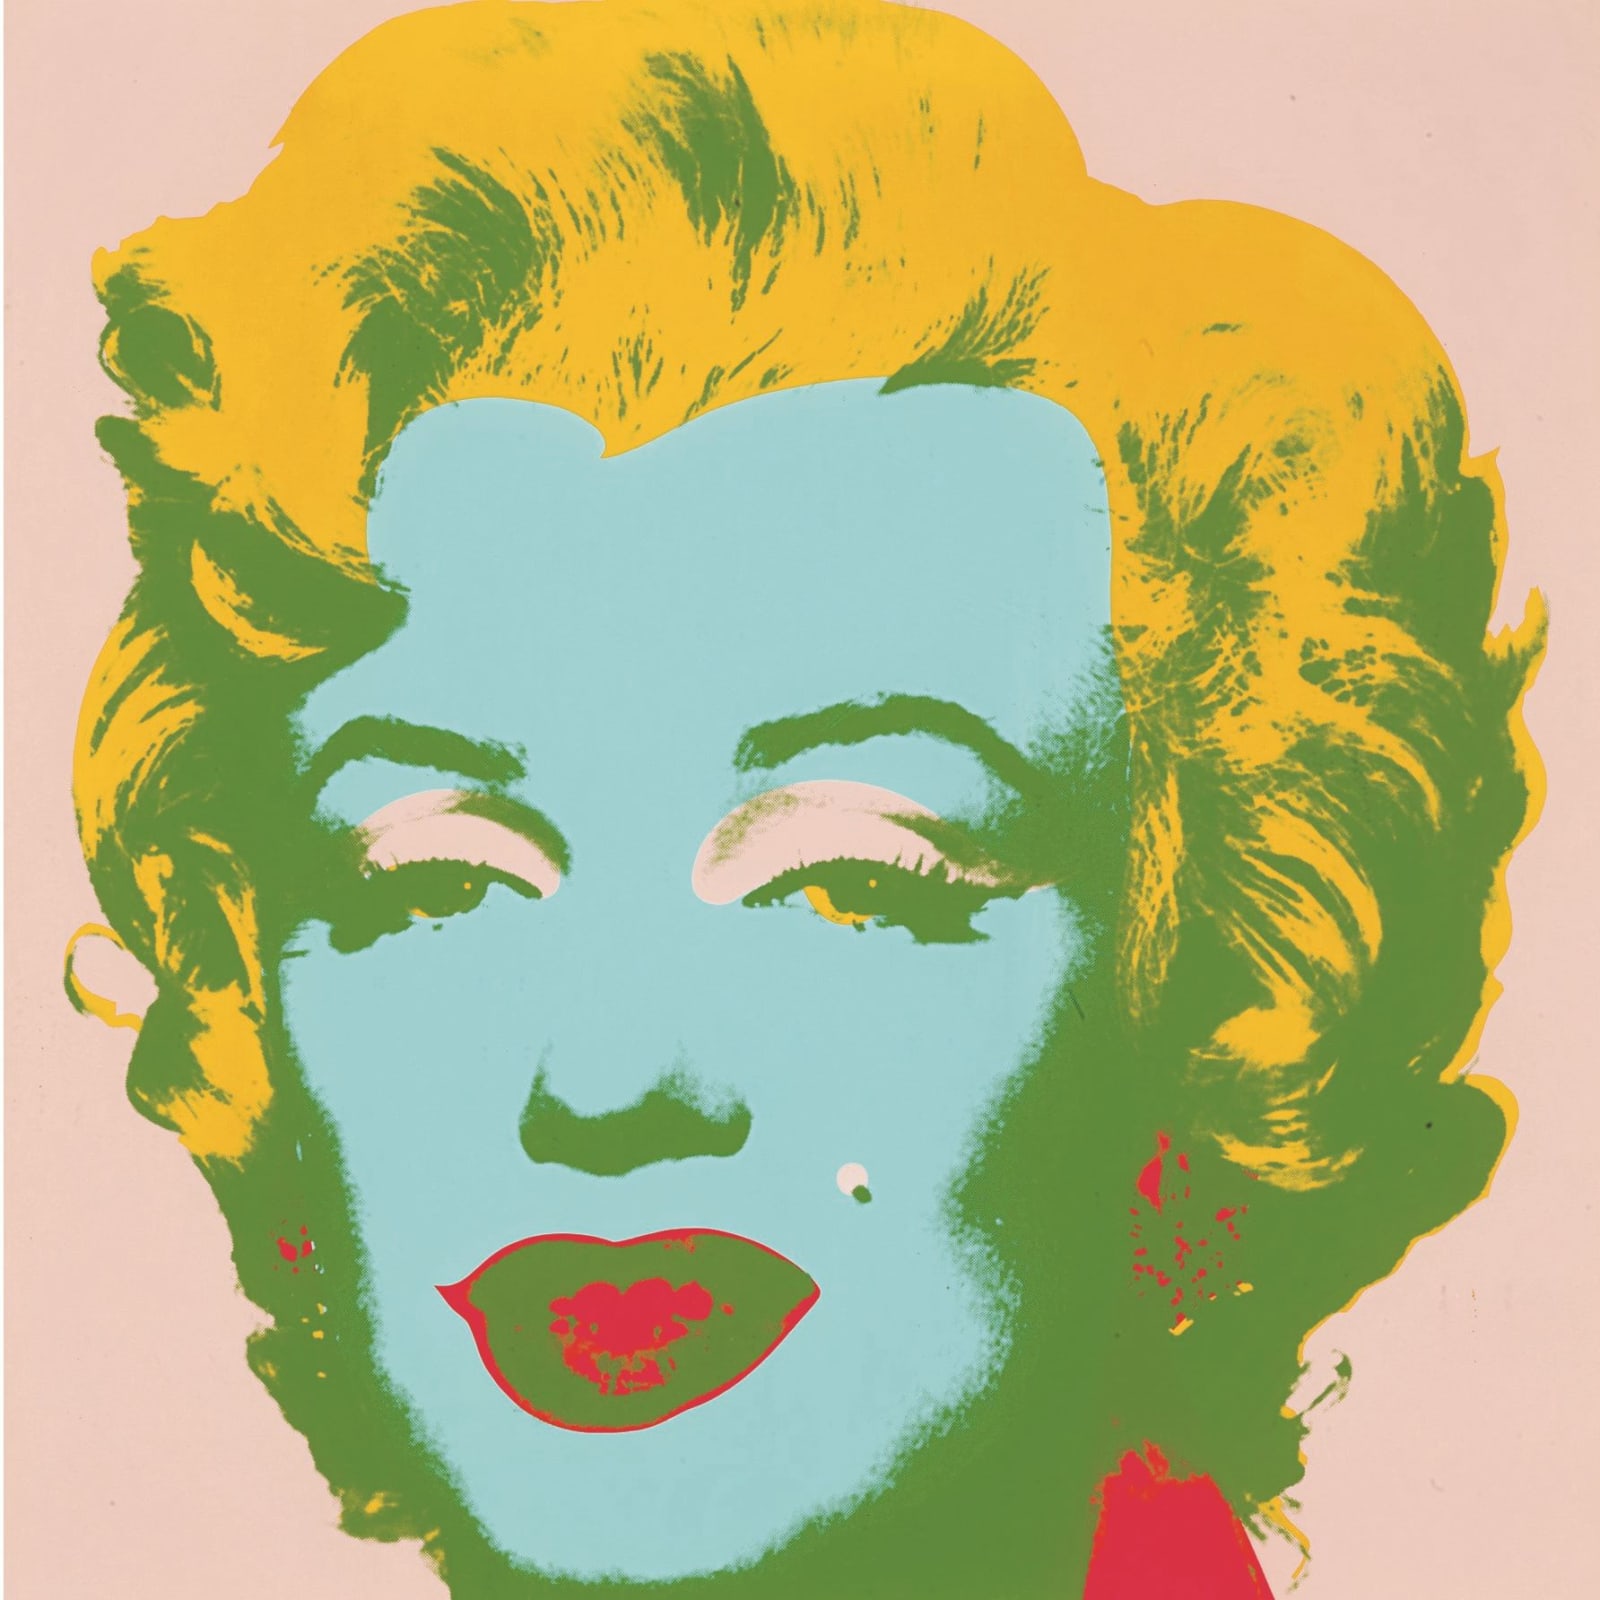 Andy Warhol Marilyn Monroe F&S II.28